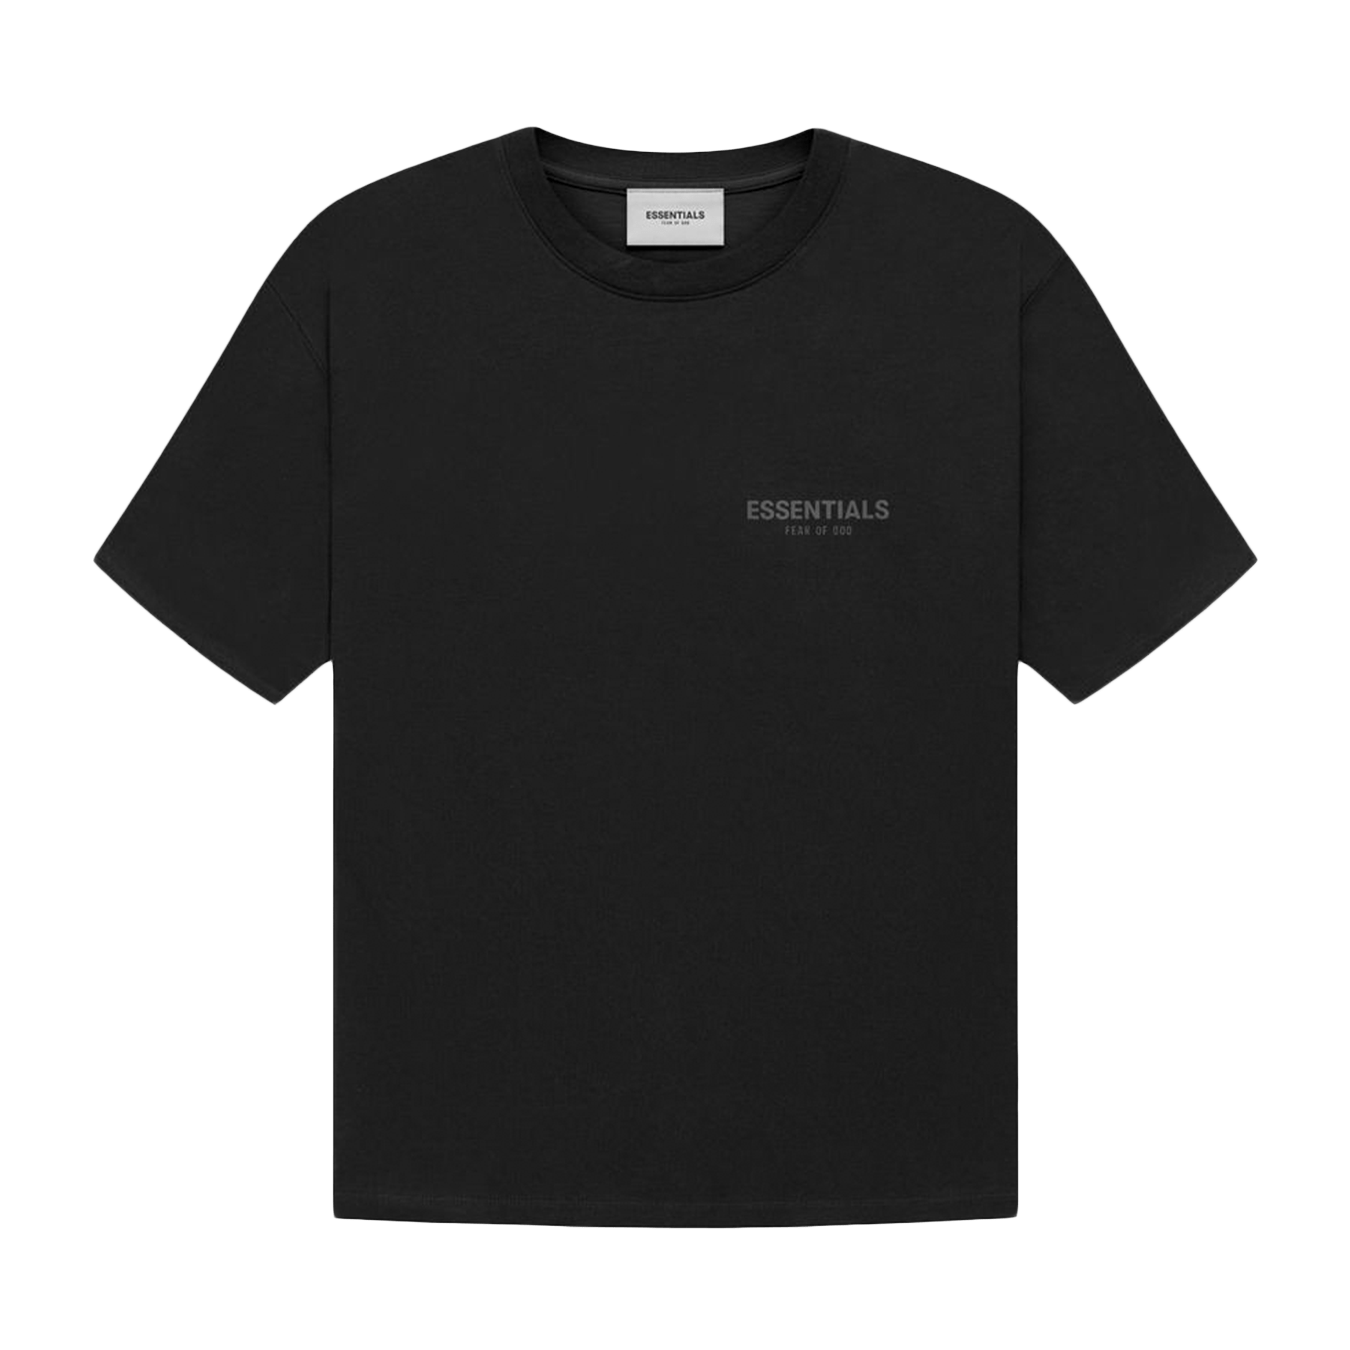 Fear of God Fear OF God Essential T-Shirt black SZ M | Grailed